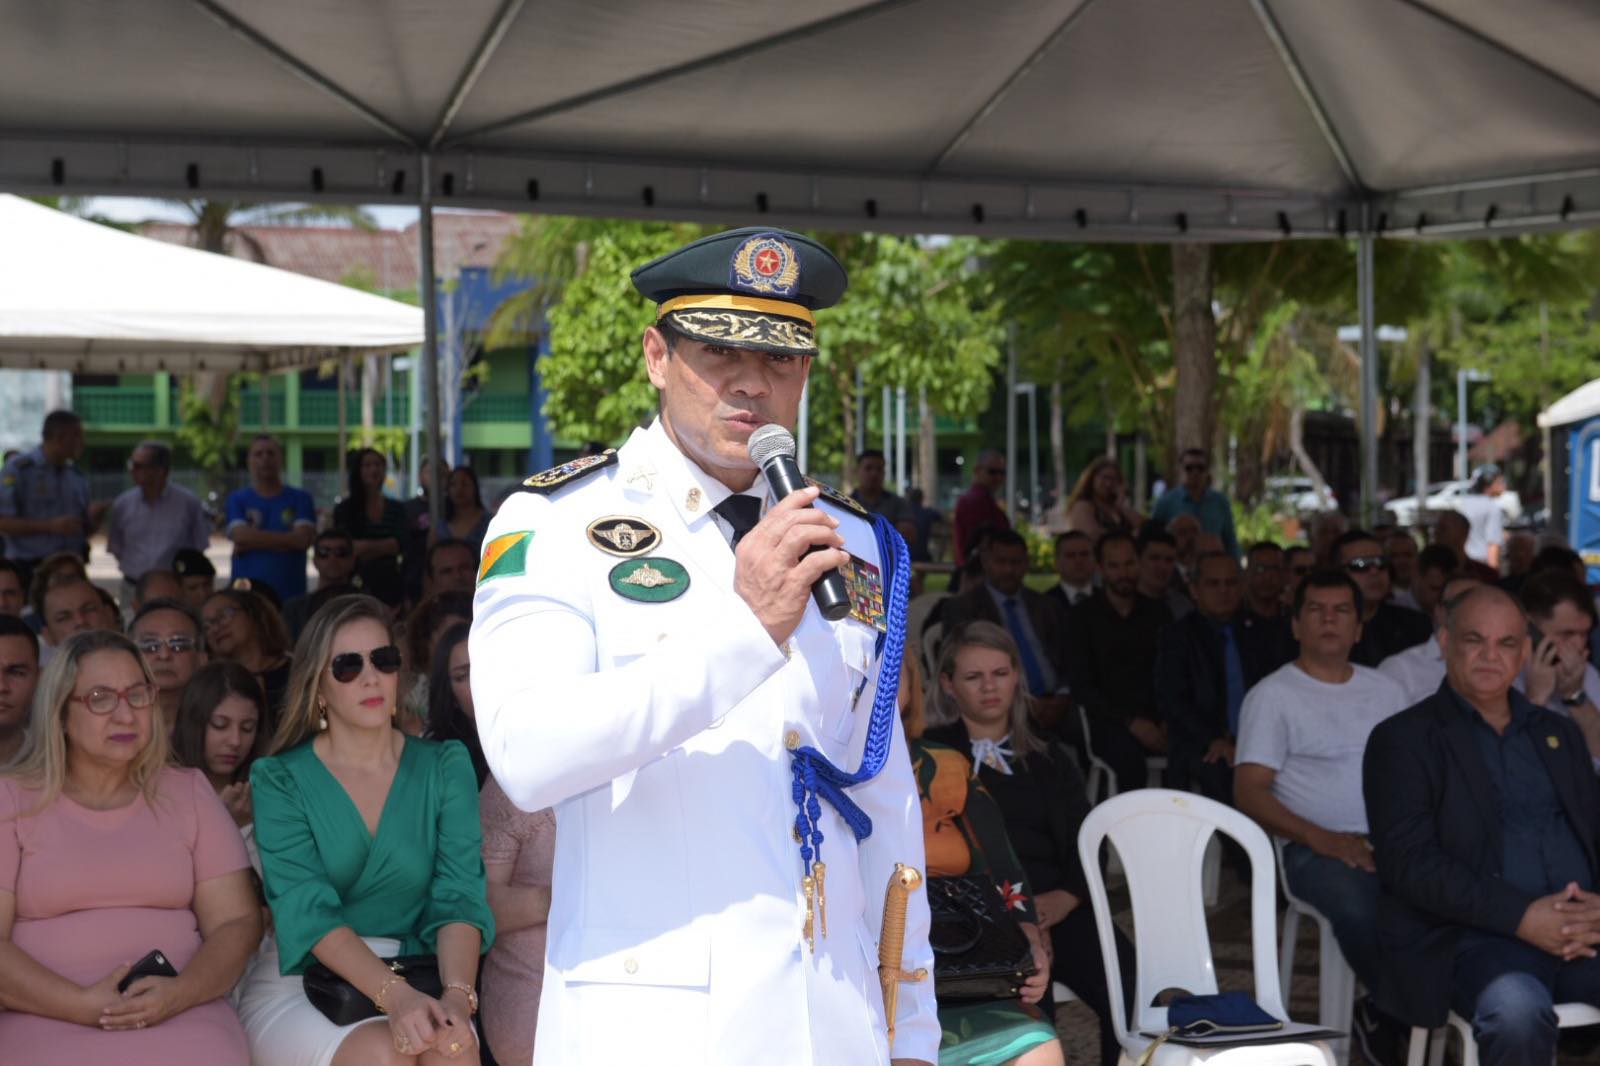 Polícia Militar acreana orgulha todo Estado”, enfatiza deputado coronel Ulysses.